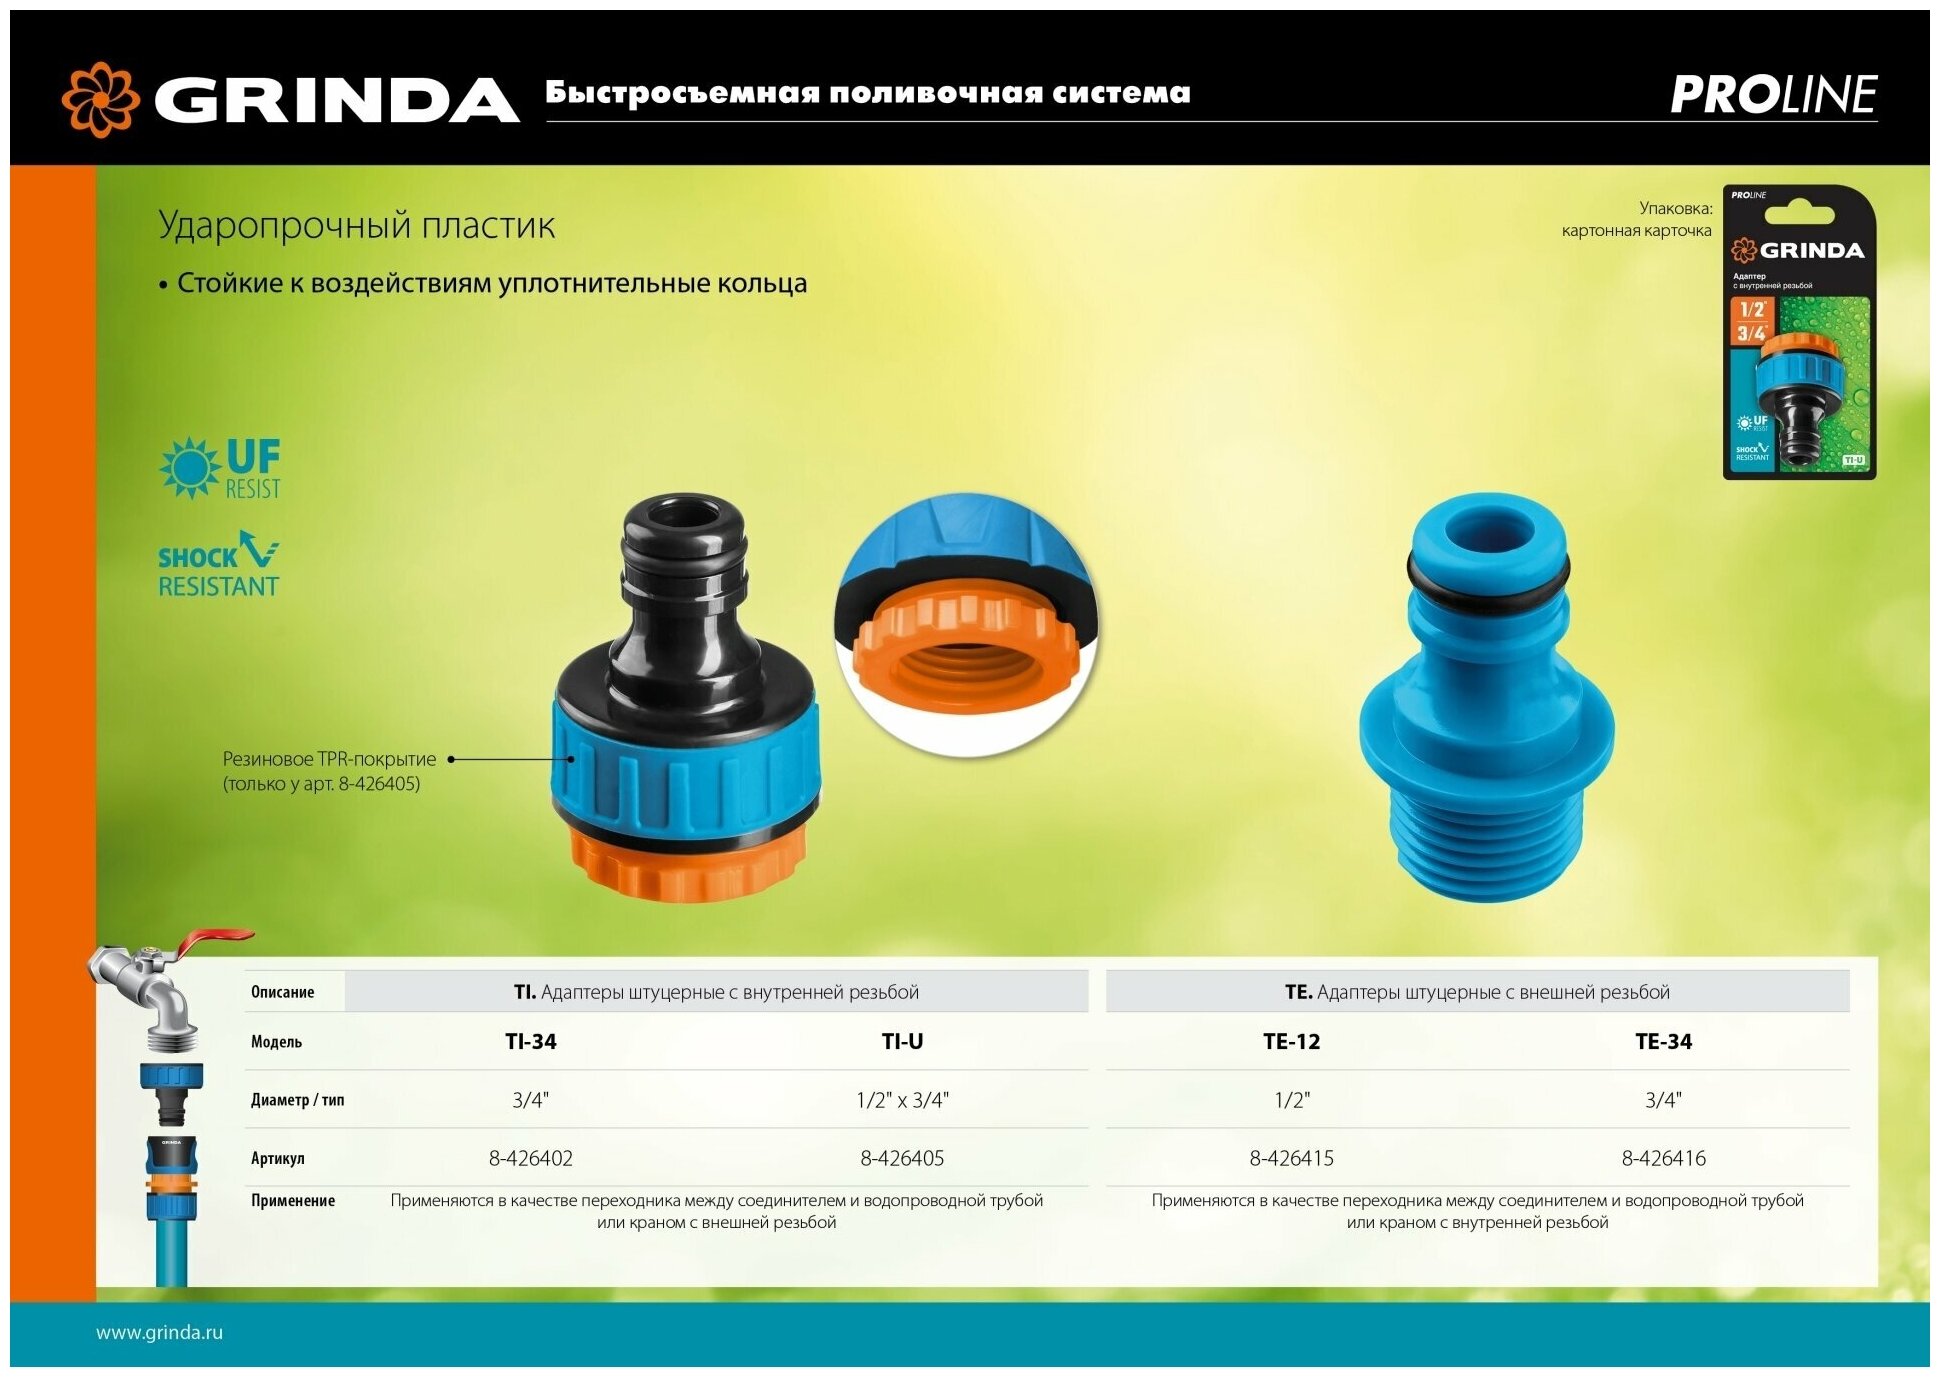 GRINDA TI-U, 1/2″ x 3/4″, с внутренней резьбой, штуцерный адаптер, PROLine (8-426405)